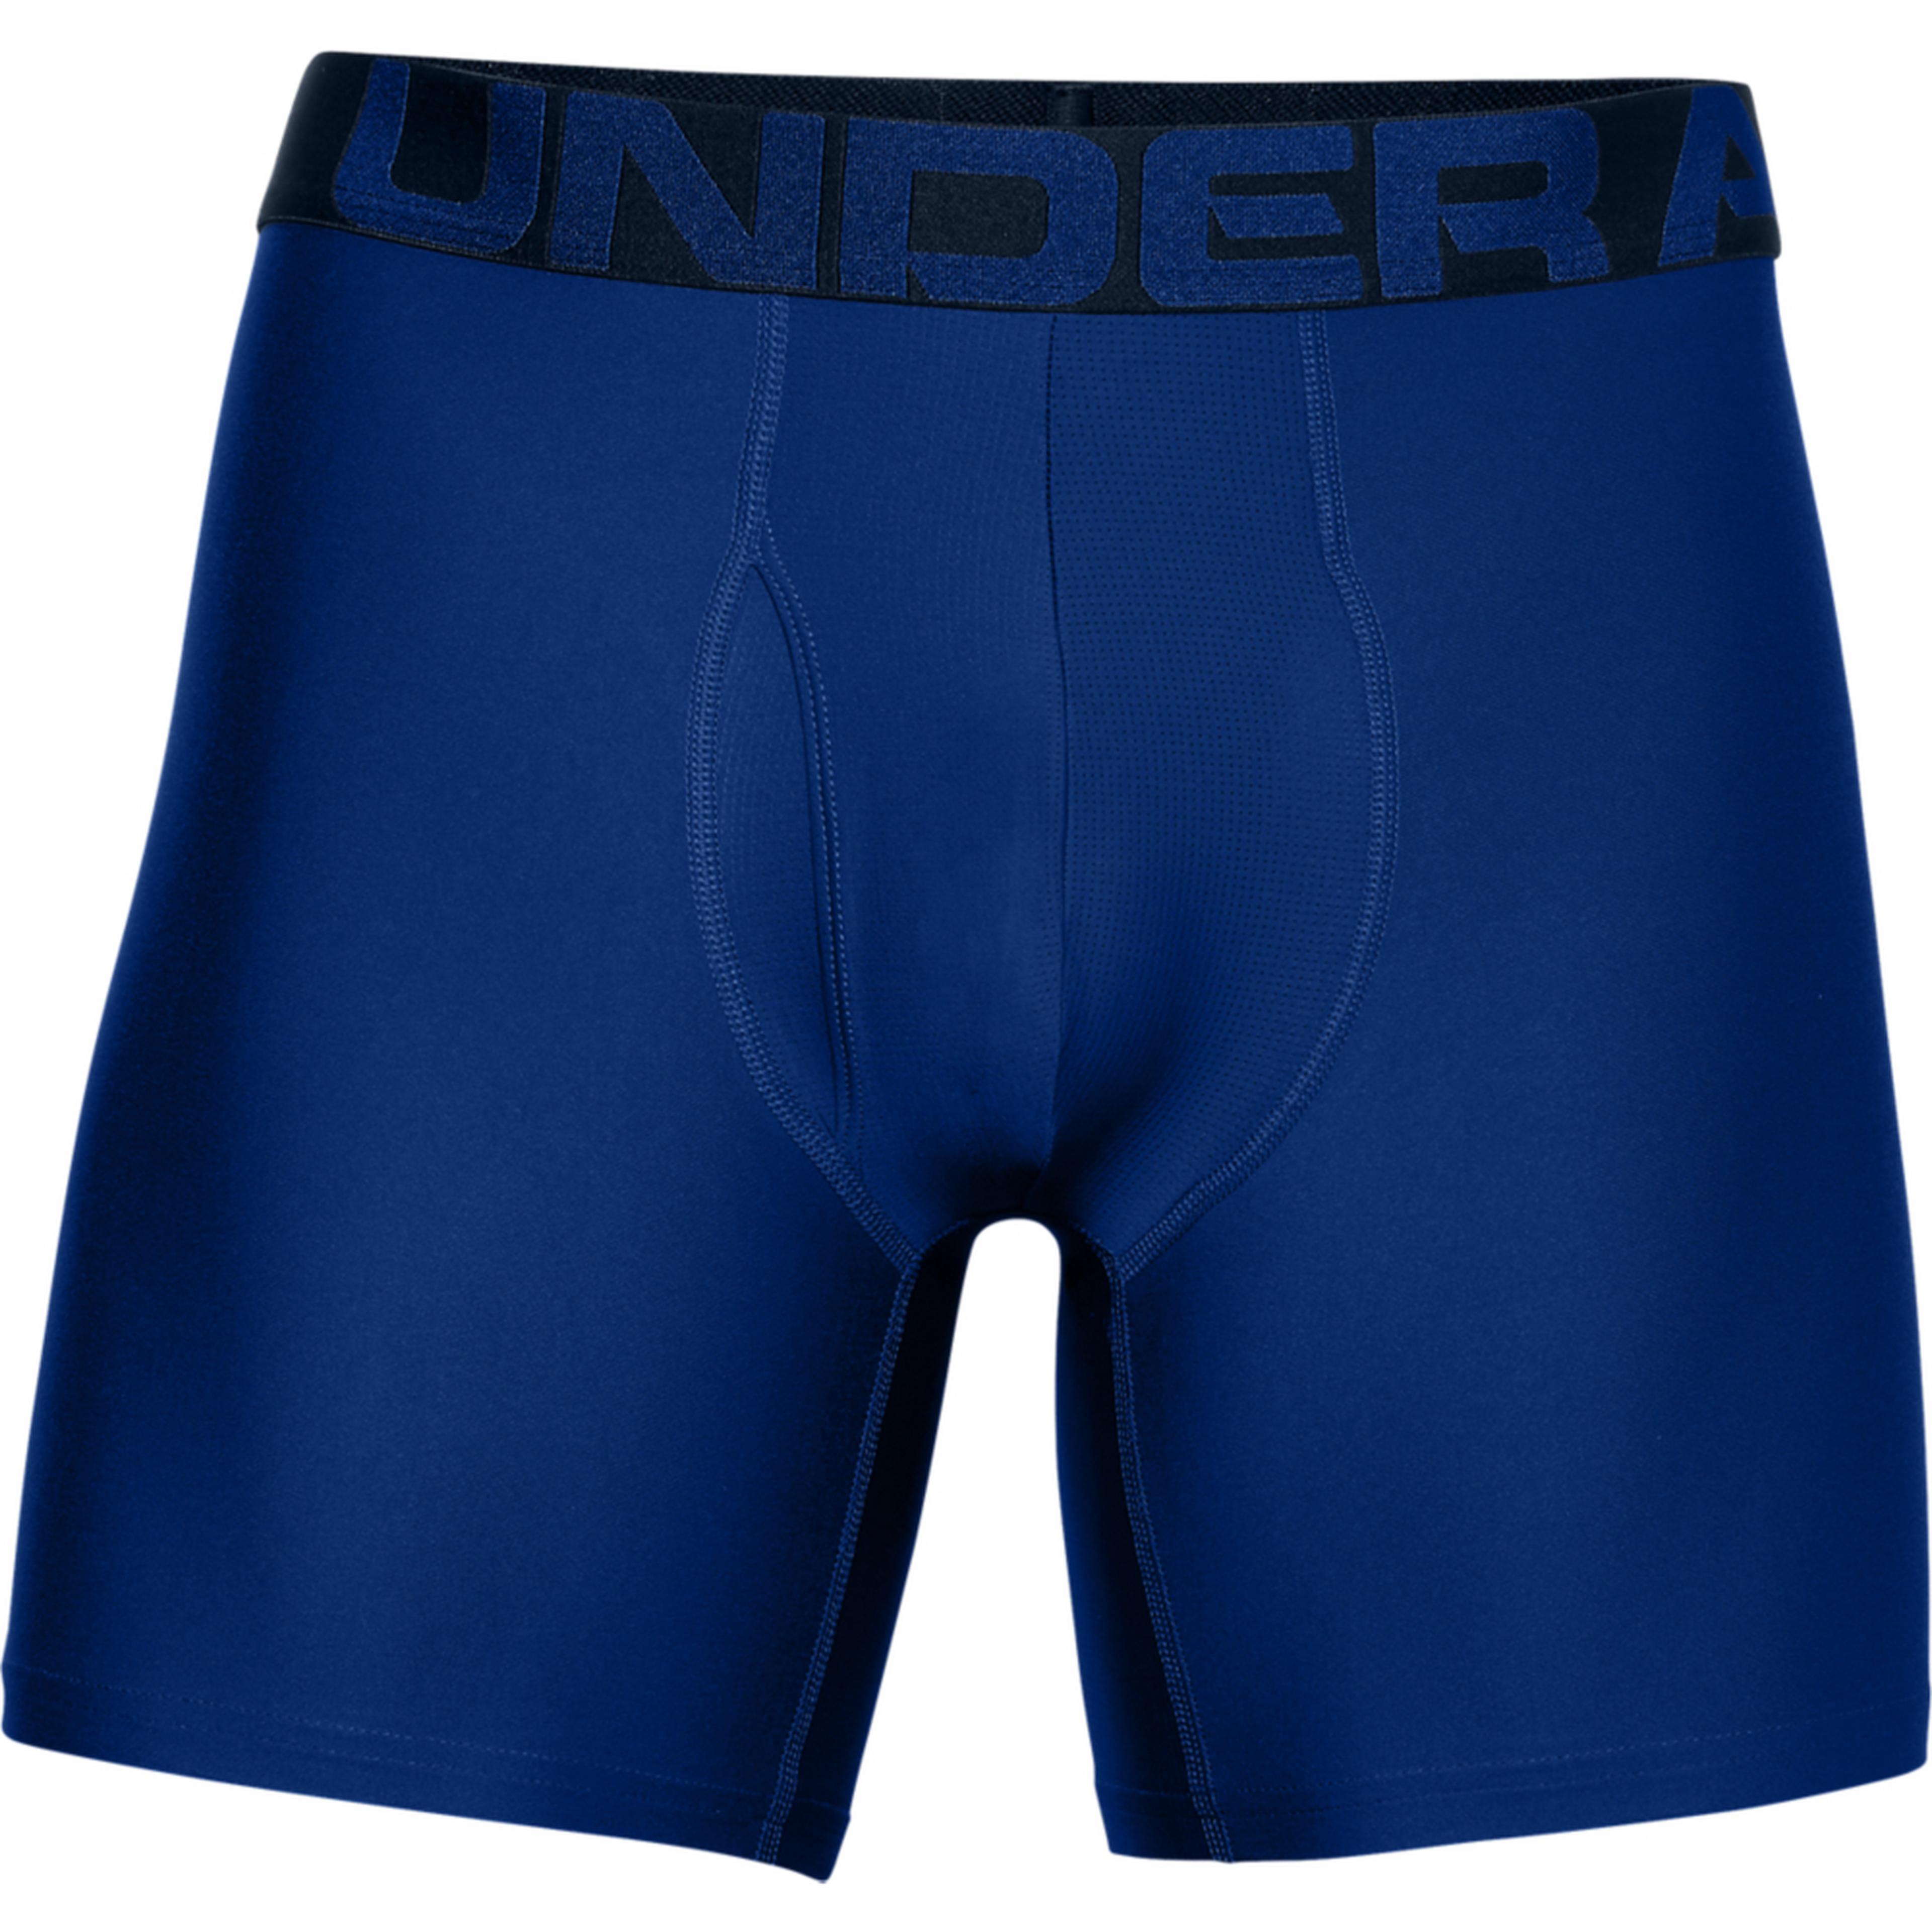 Cycling Underwear